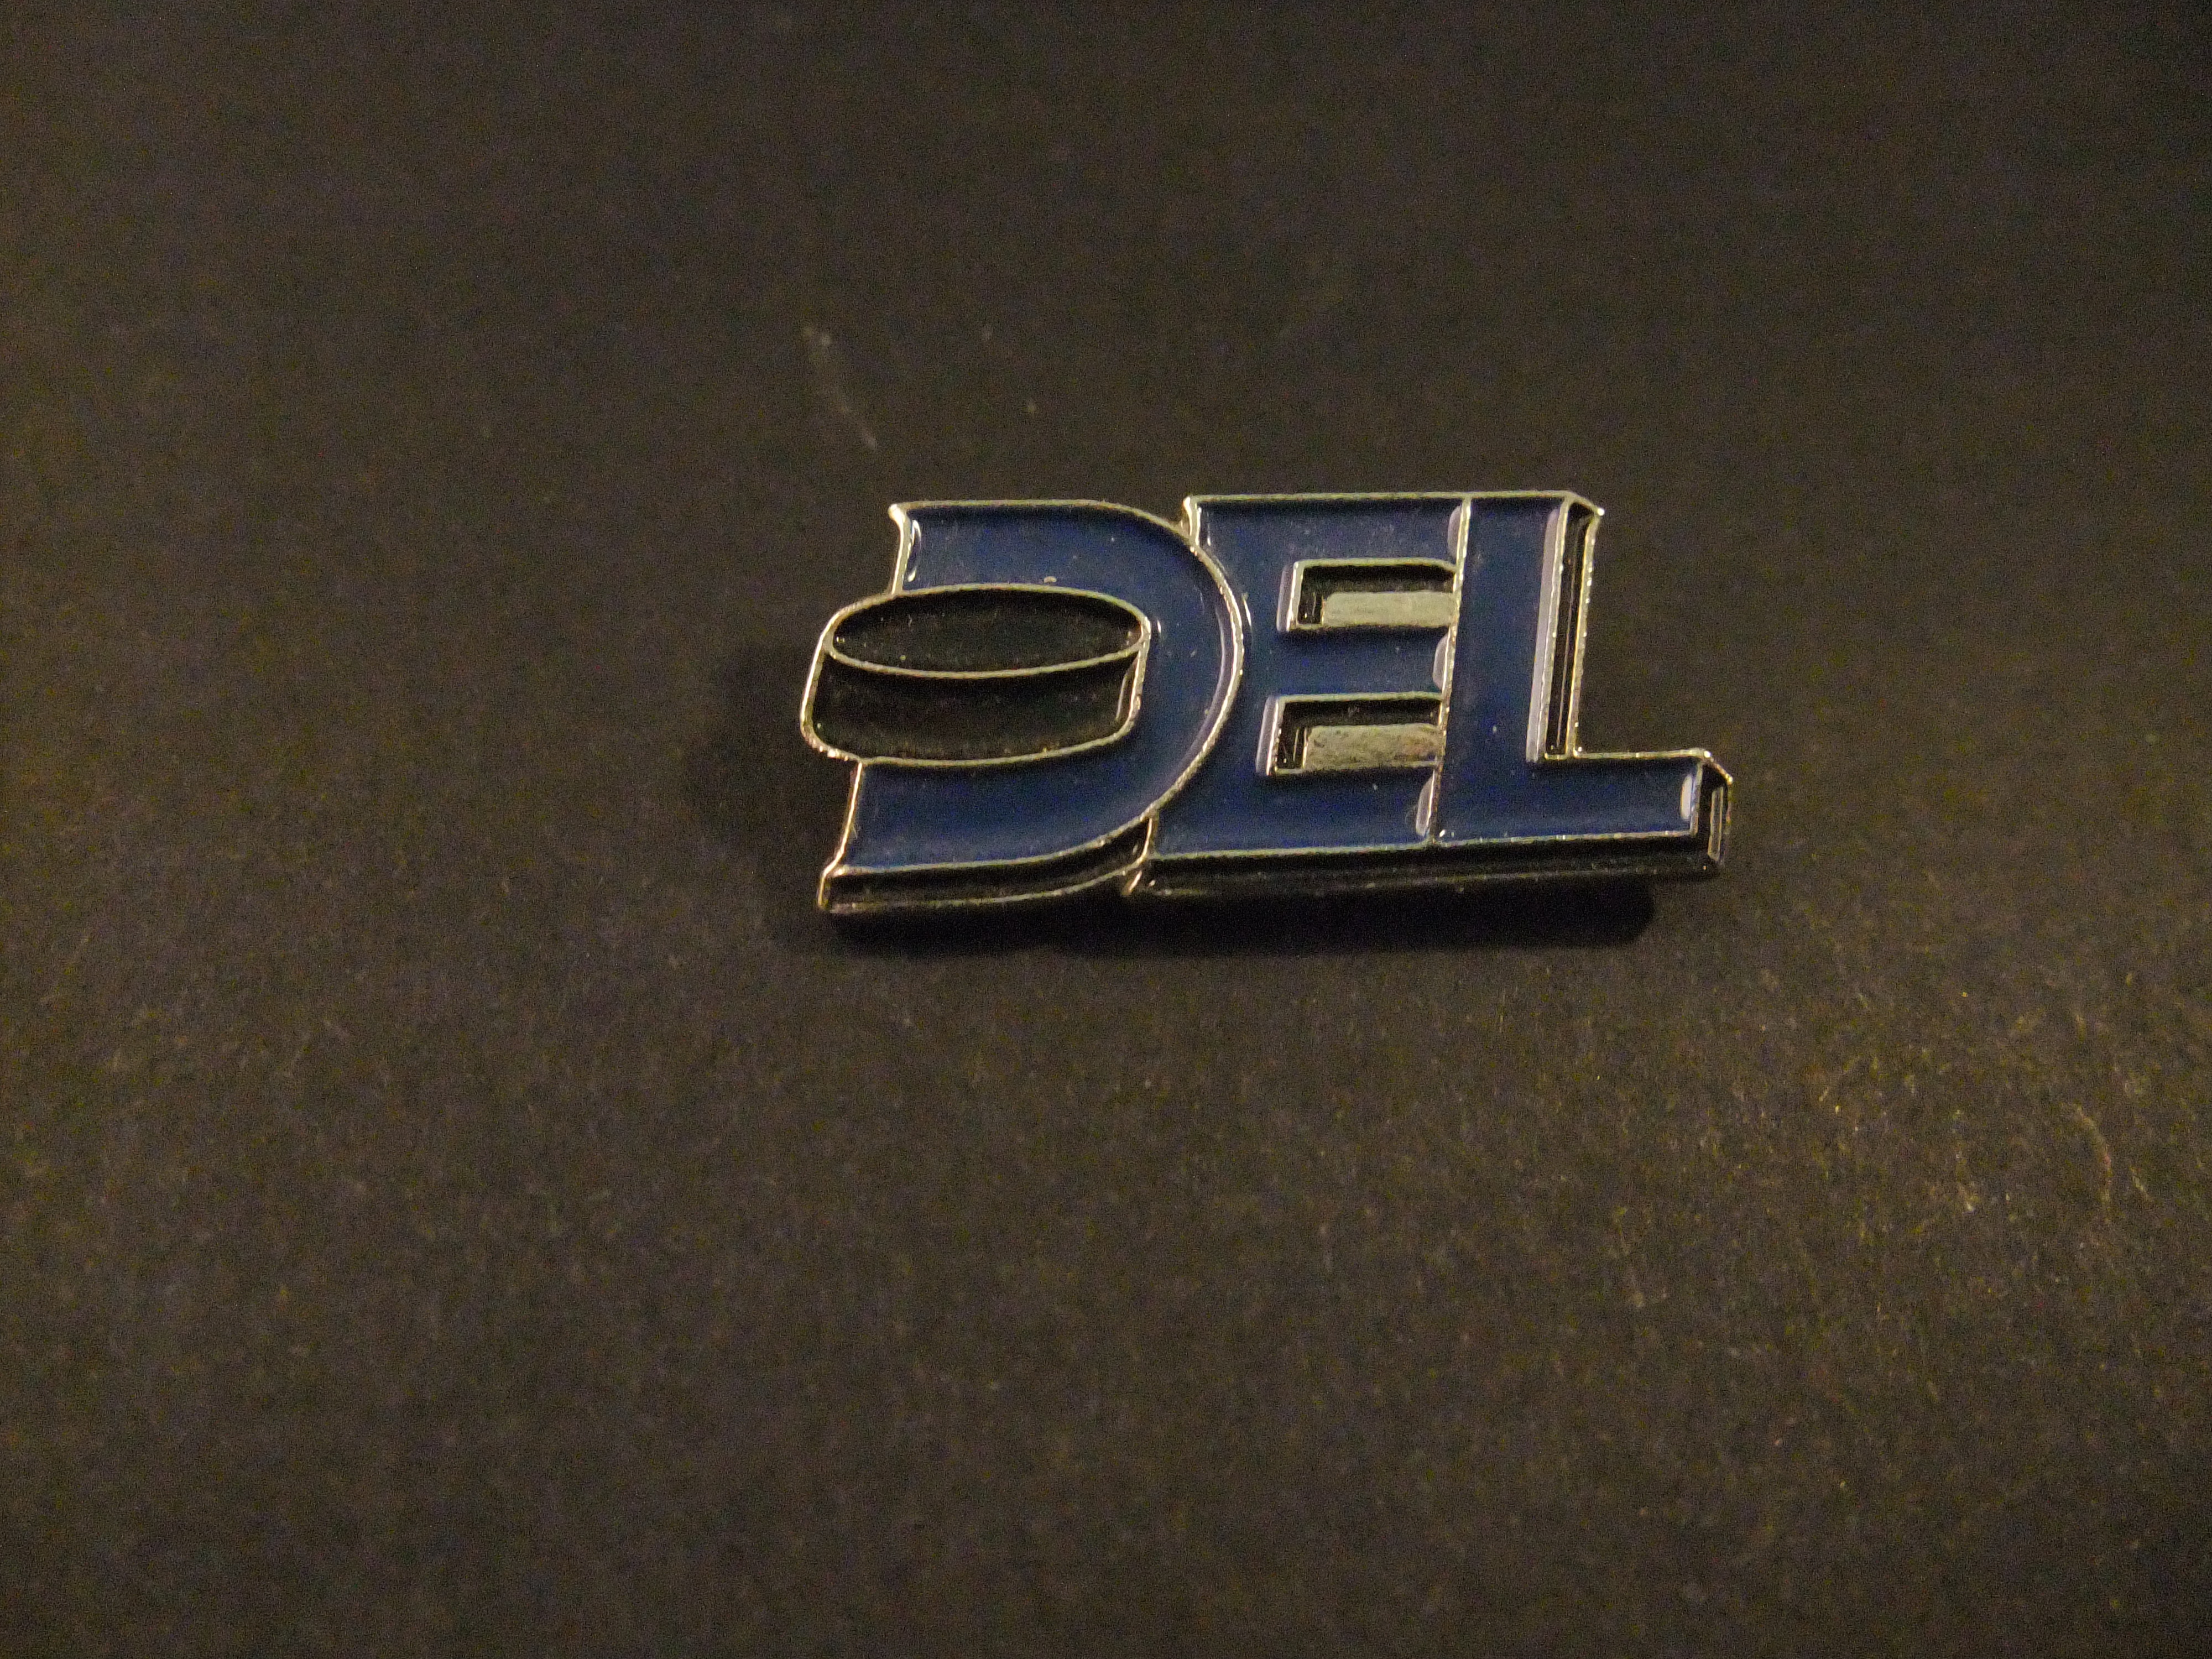 DEL ( Deutsche Eishockey Liga ) logo